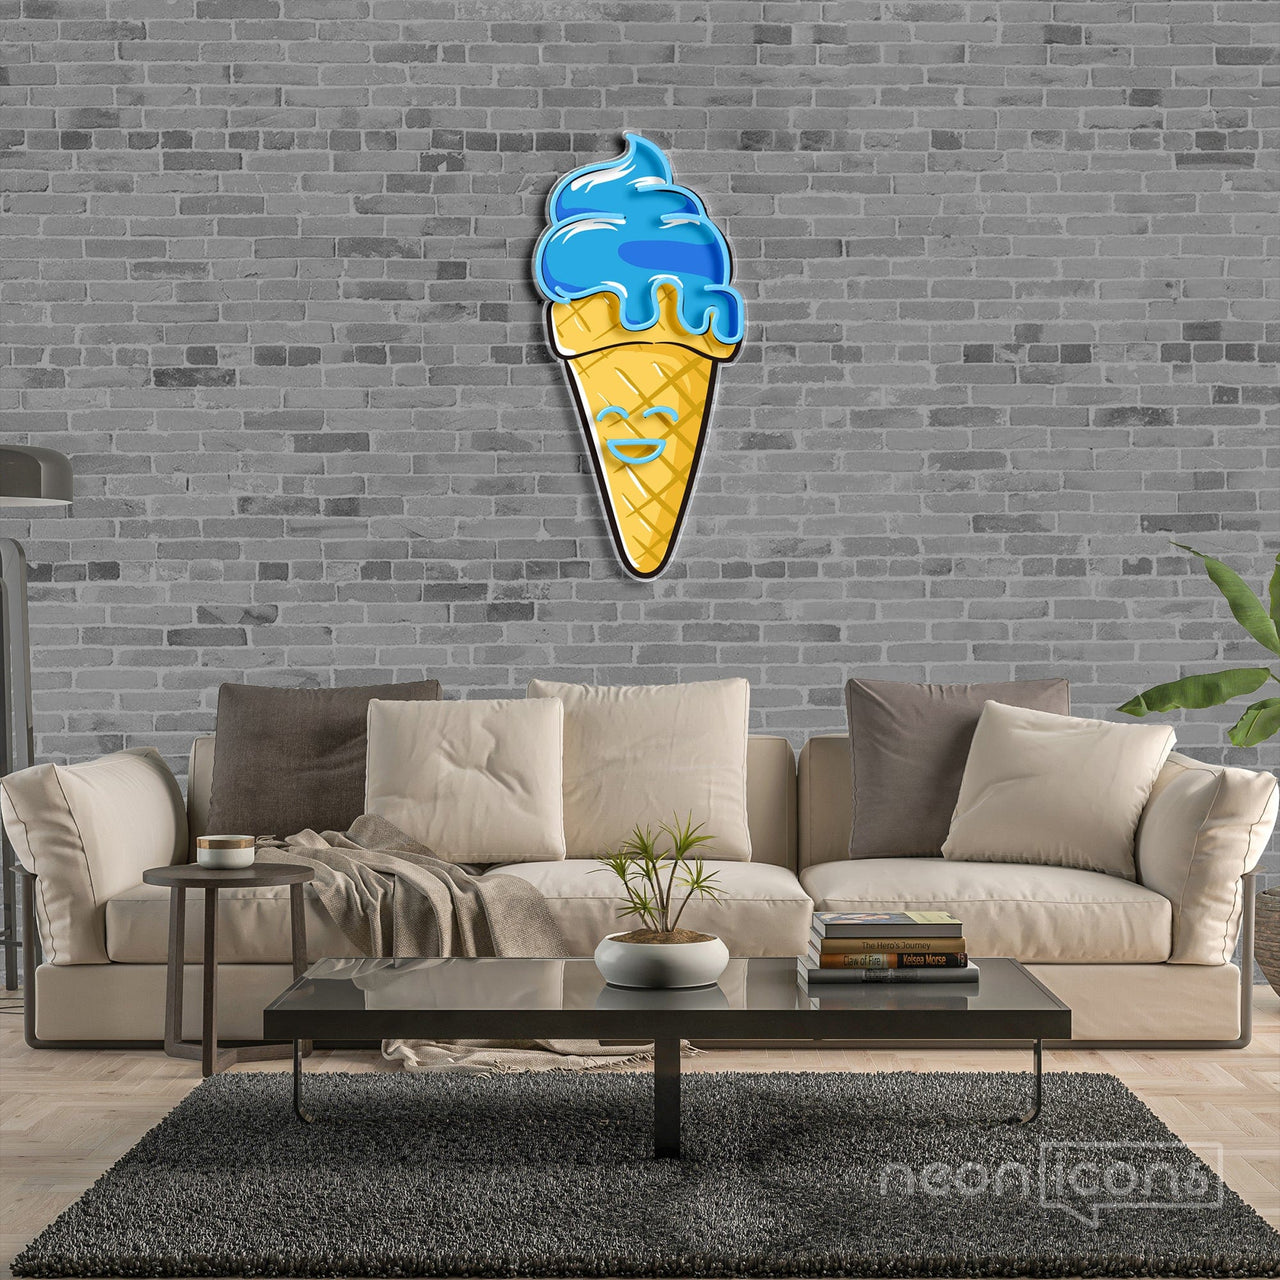 "Happycream Cone V1" Neon x Acrylic Artwork by Neon Icons